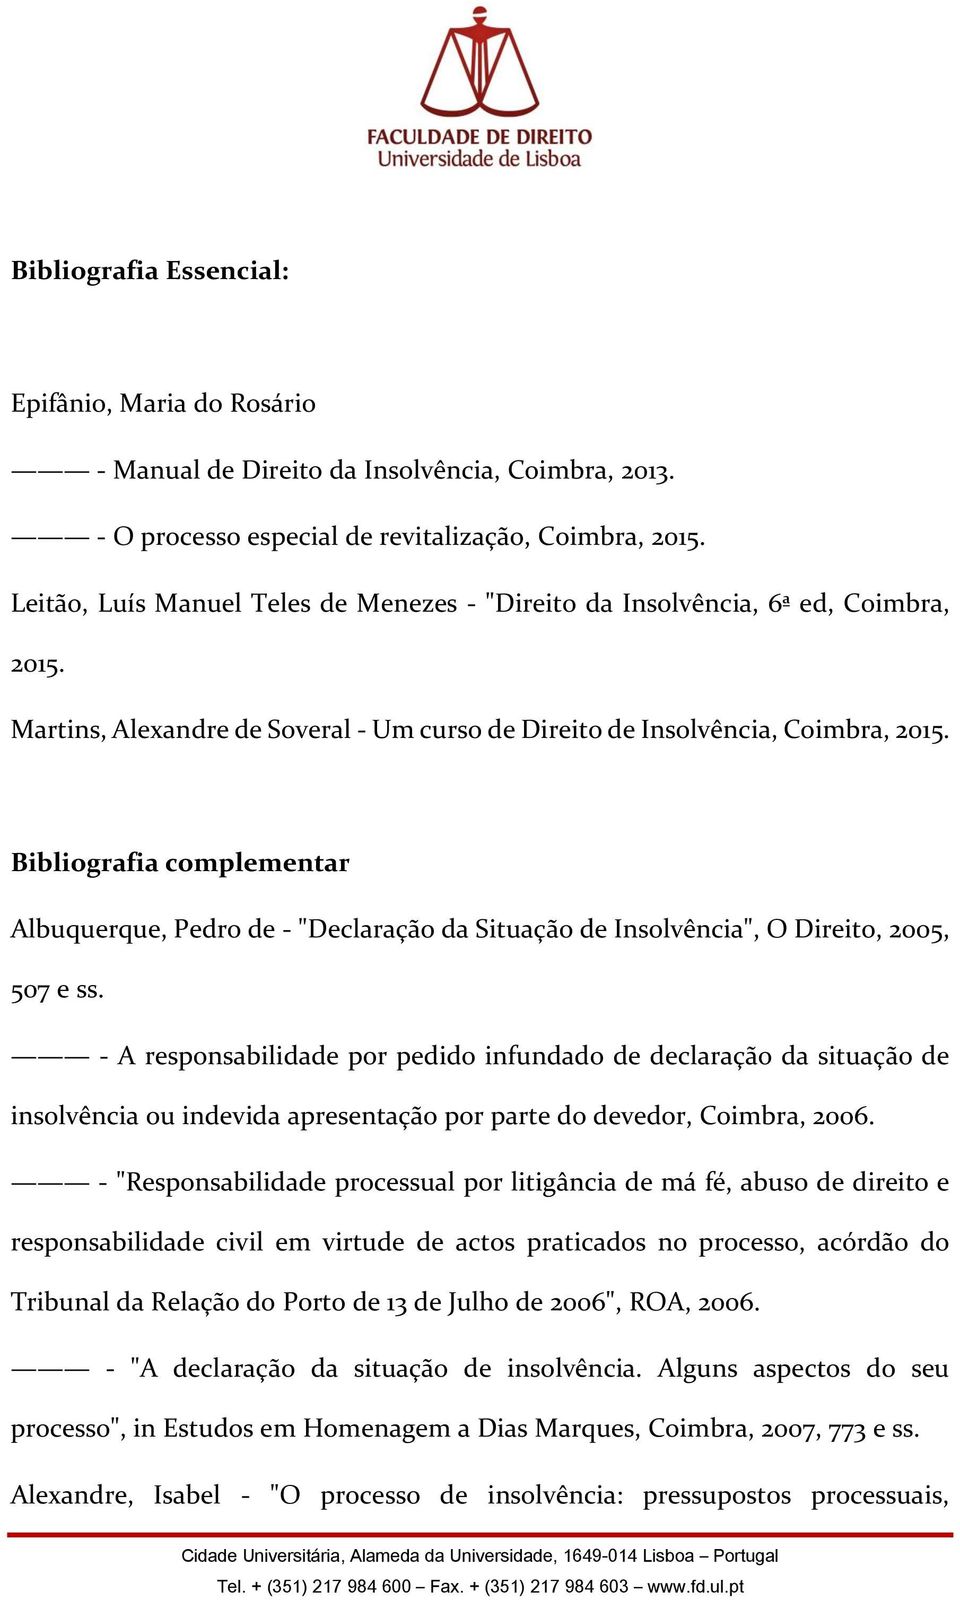 Bibliografia complementar Albuquerque, Pedro de - "Declaração da Situação de Insolvência", O Direito, 2005, 507 e ss.